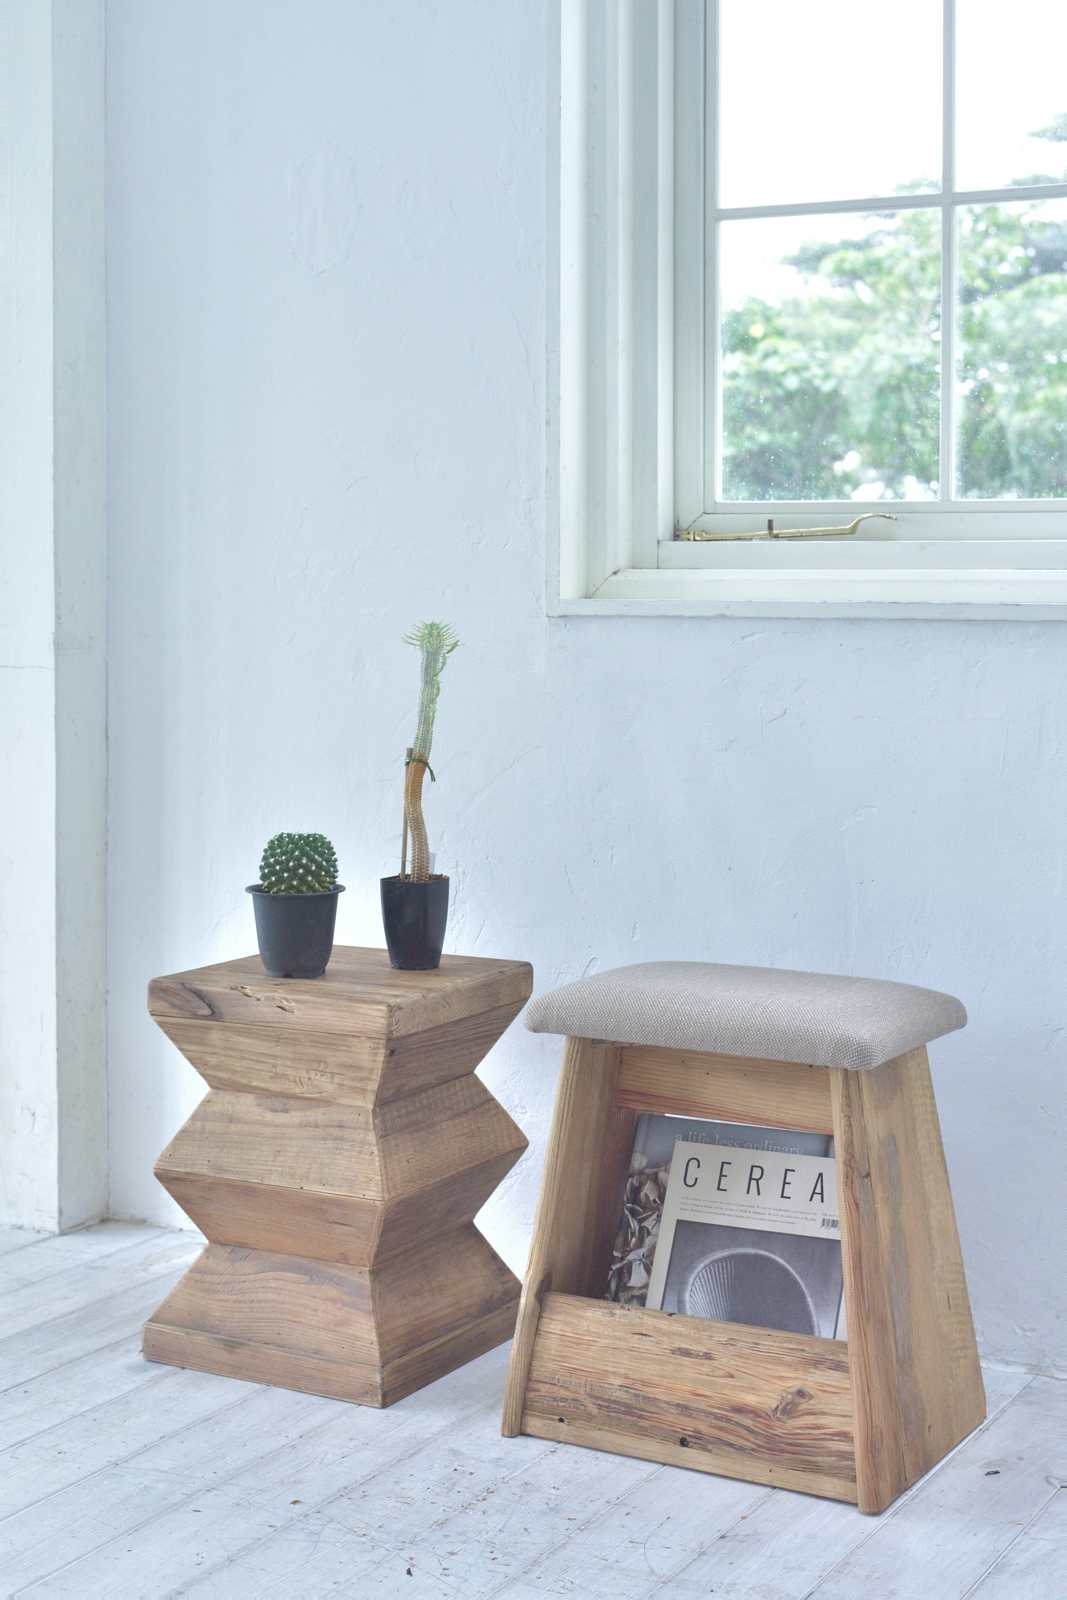 スツール 椅子 チェア ローチェア サイドテーブル ギザギザ 天然木 古 